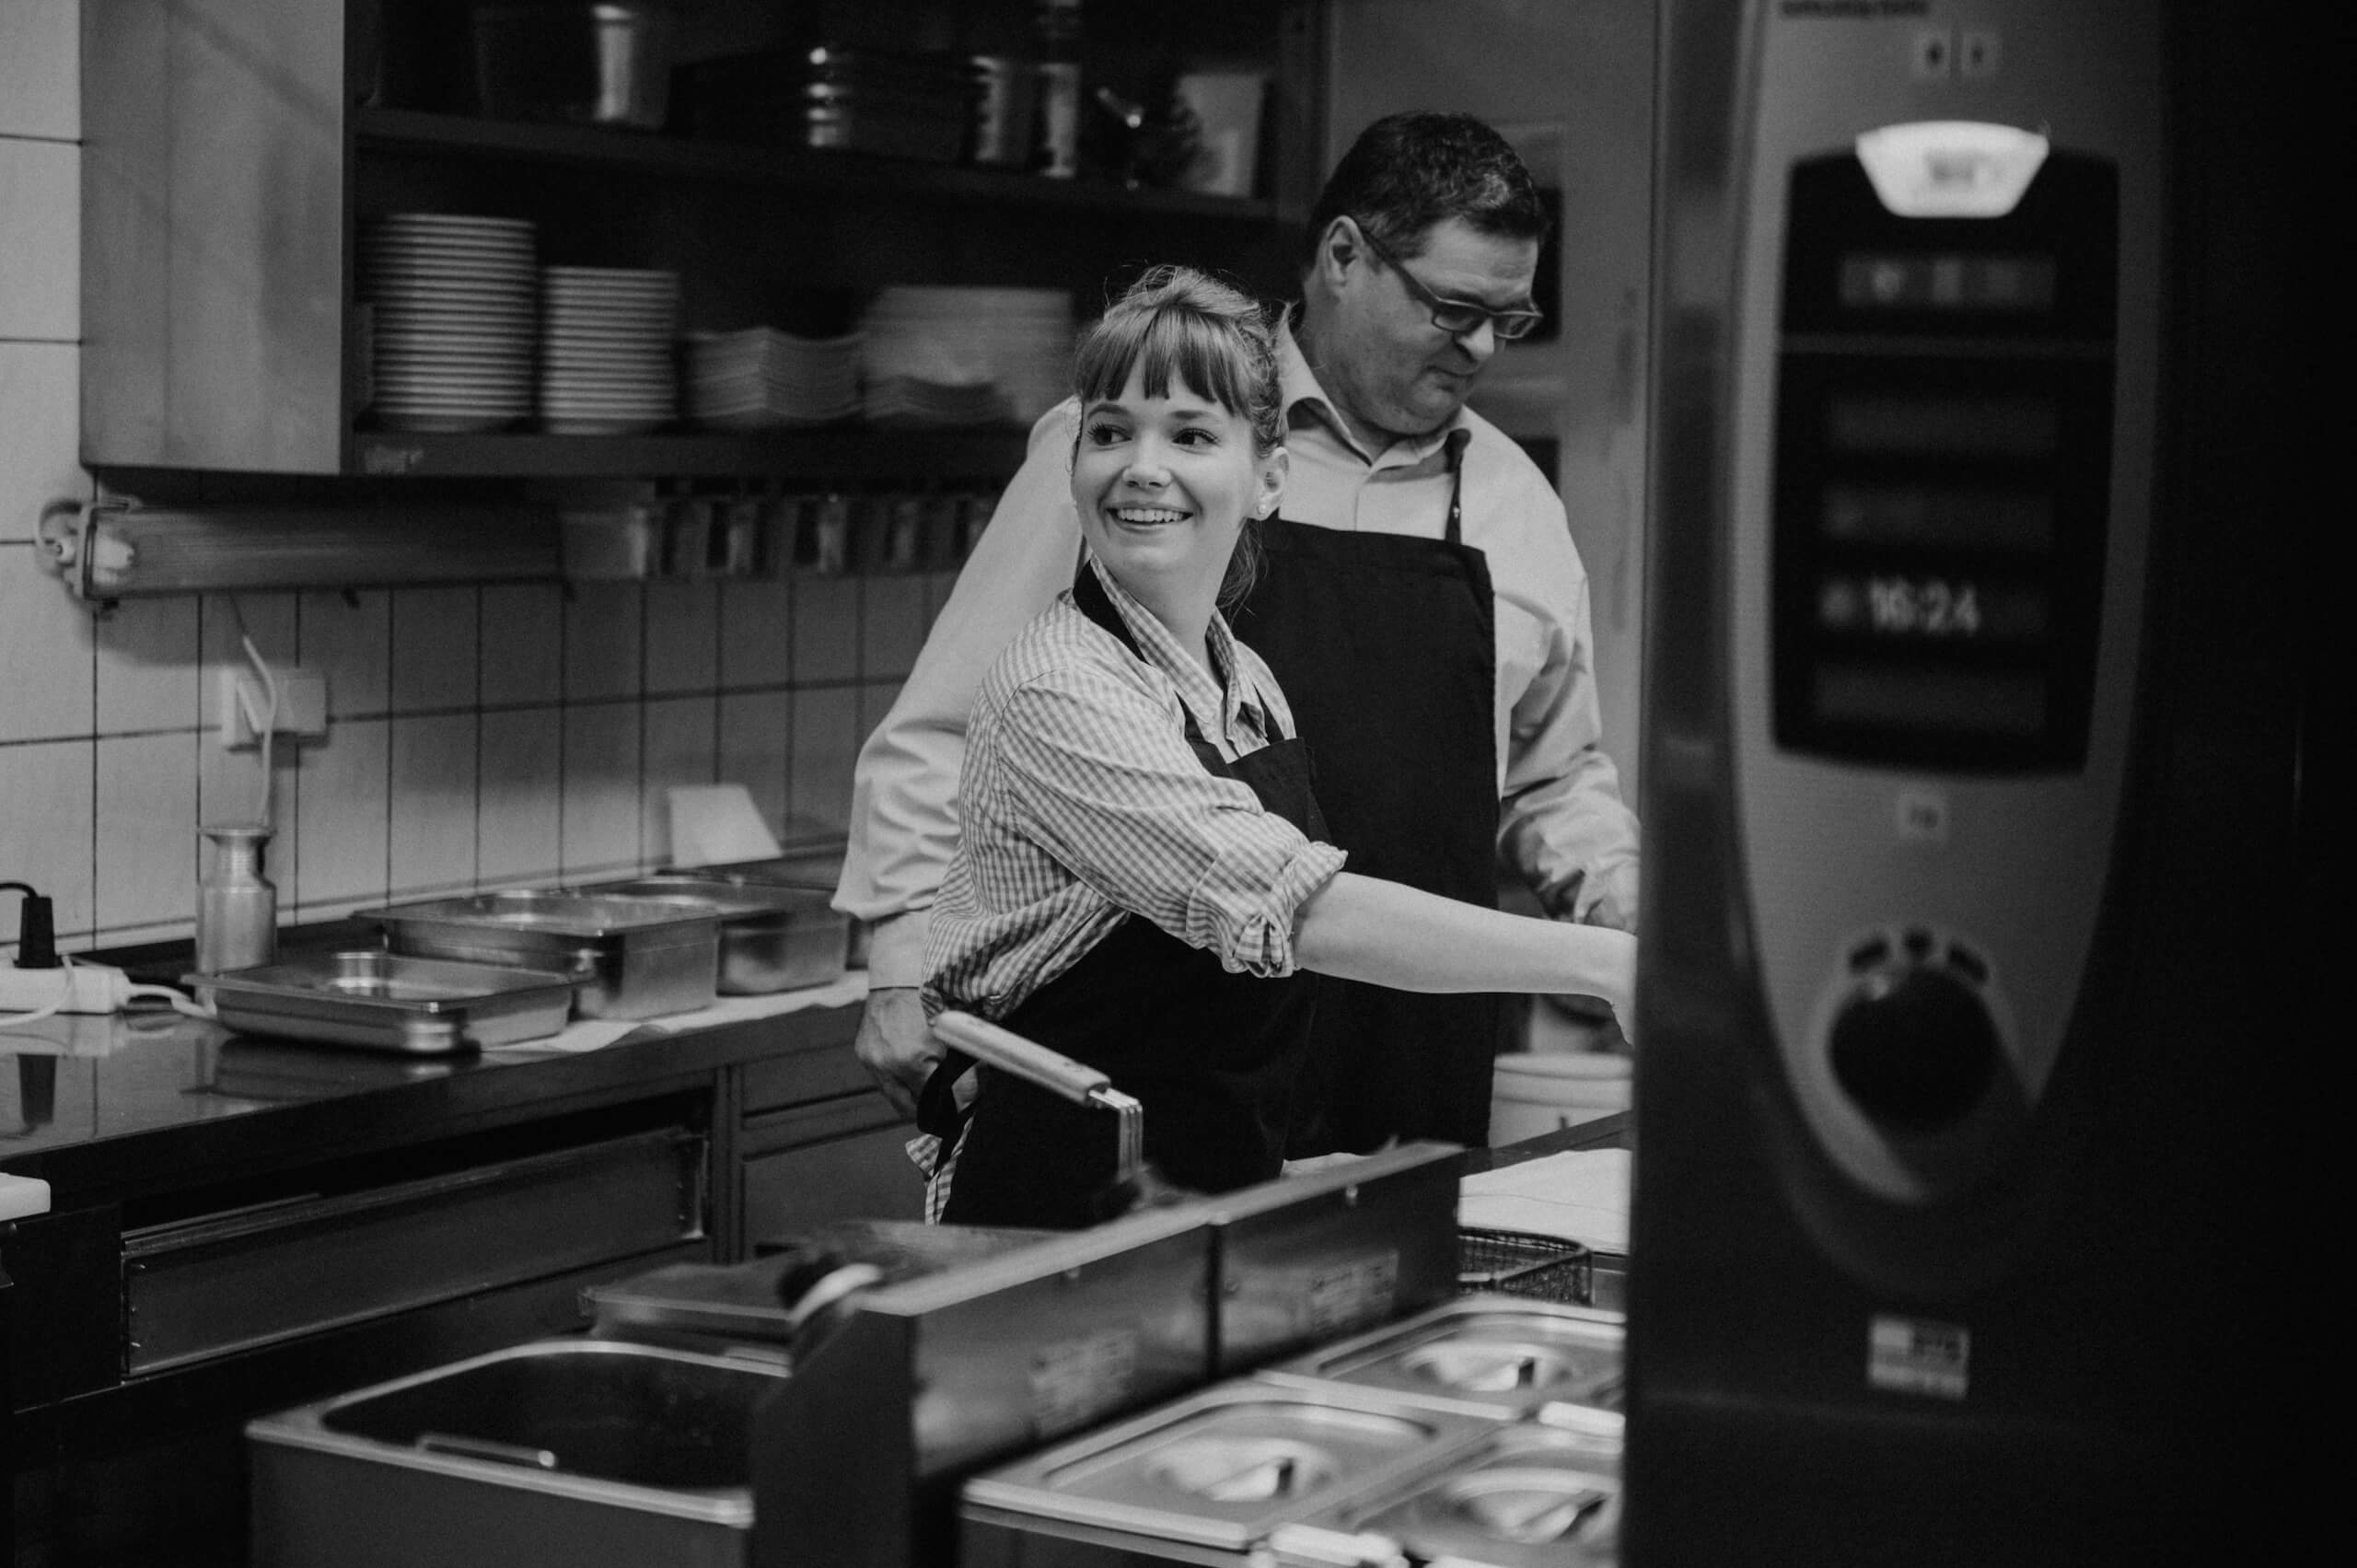 Herr und Frau Waldherr in der Küche in schwarz weiß